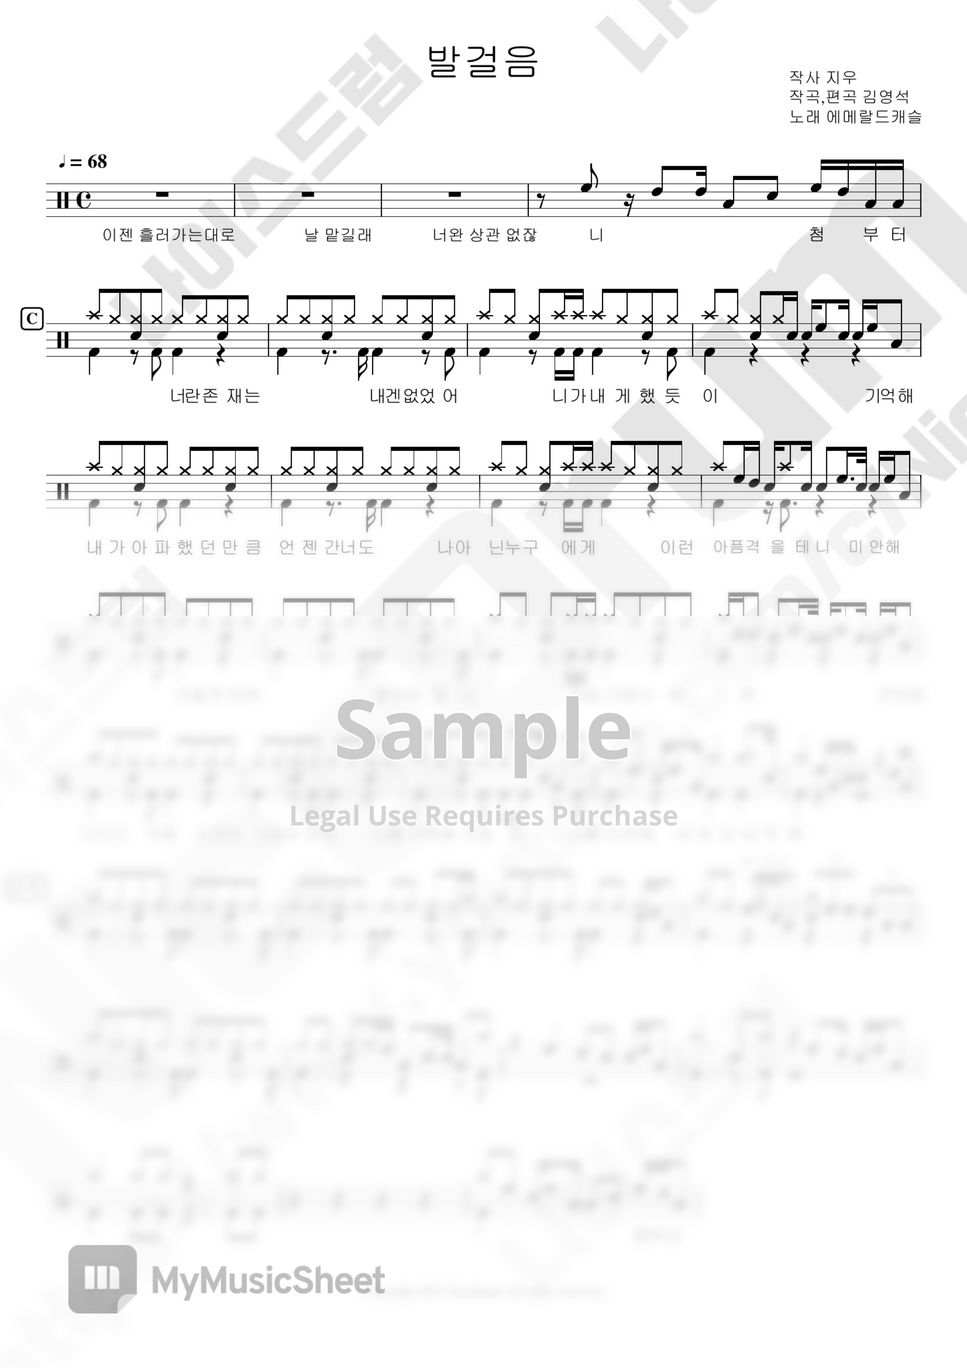 에메랄드캐슬 - 발걸음 (8090드럼) by 나이스드럼